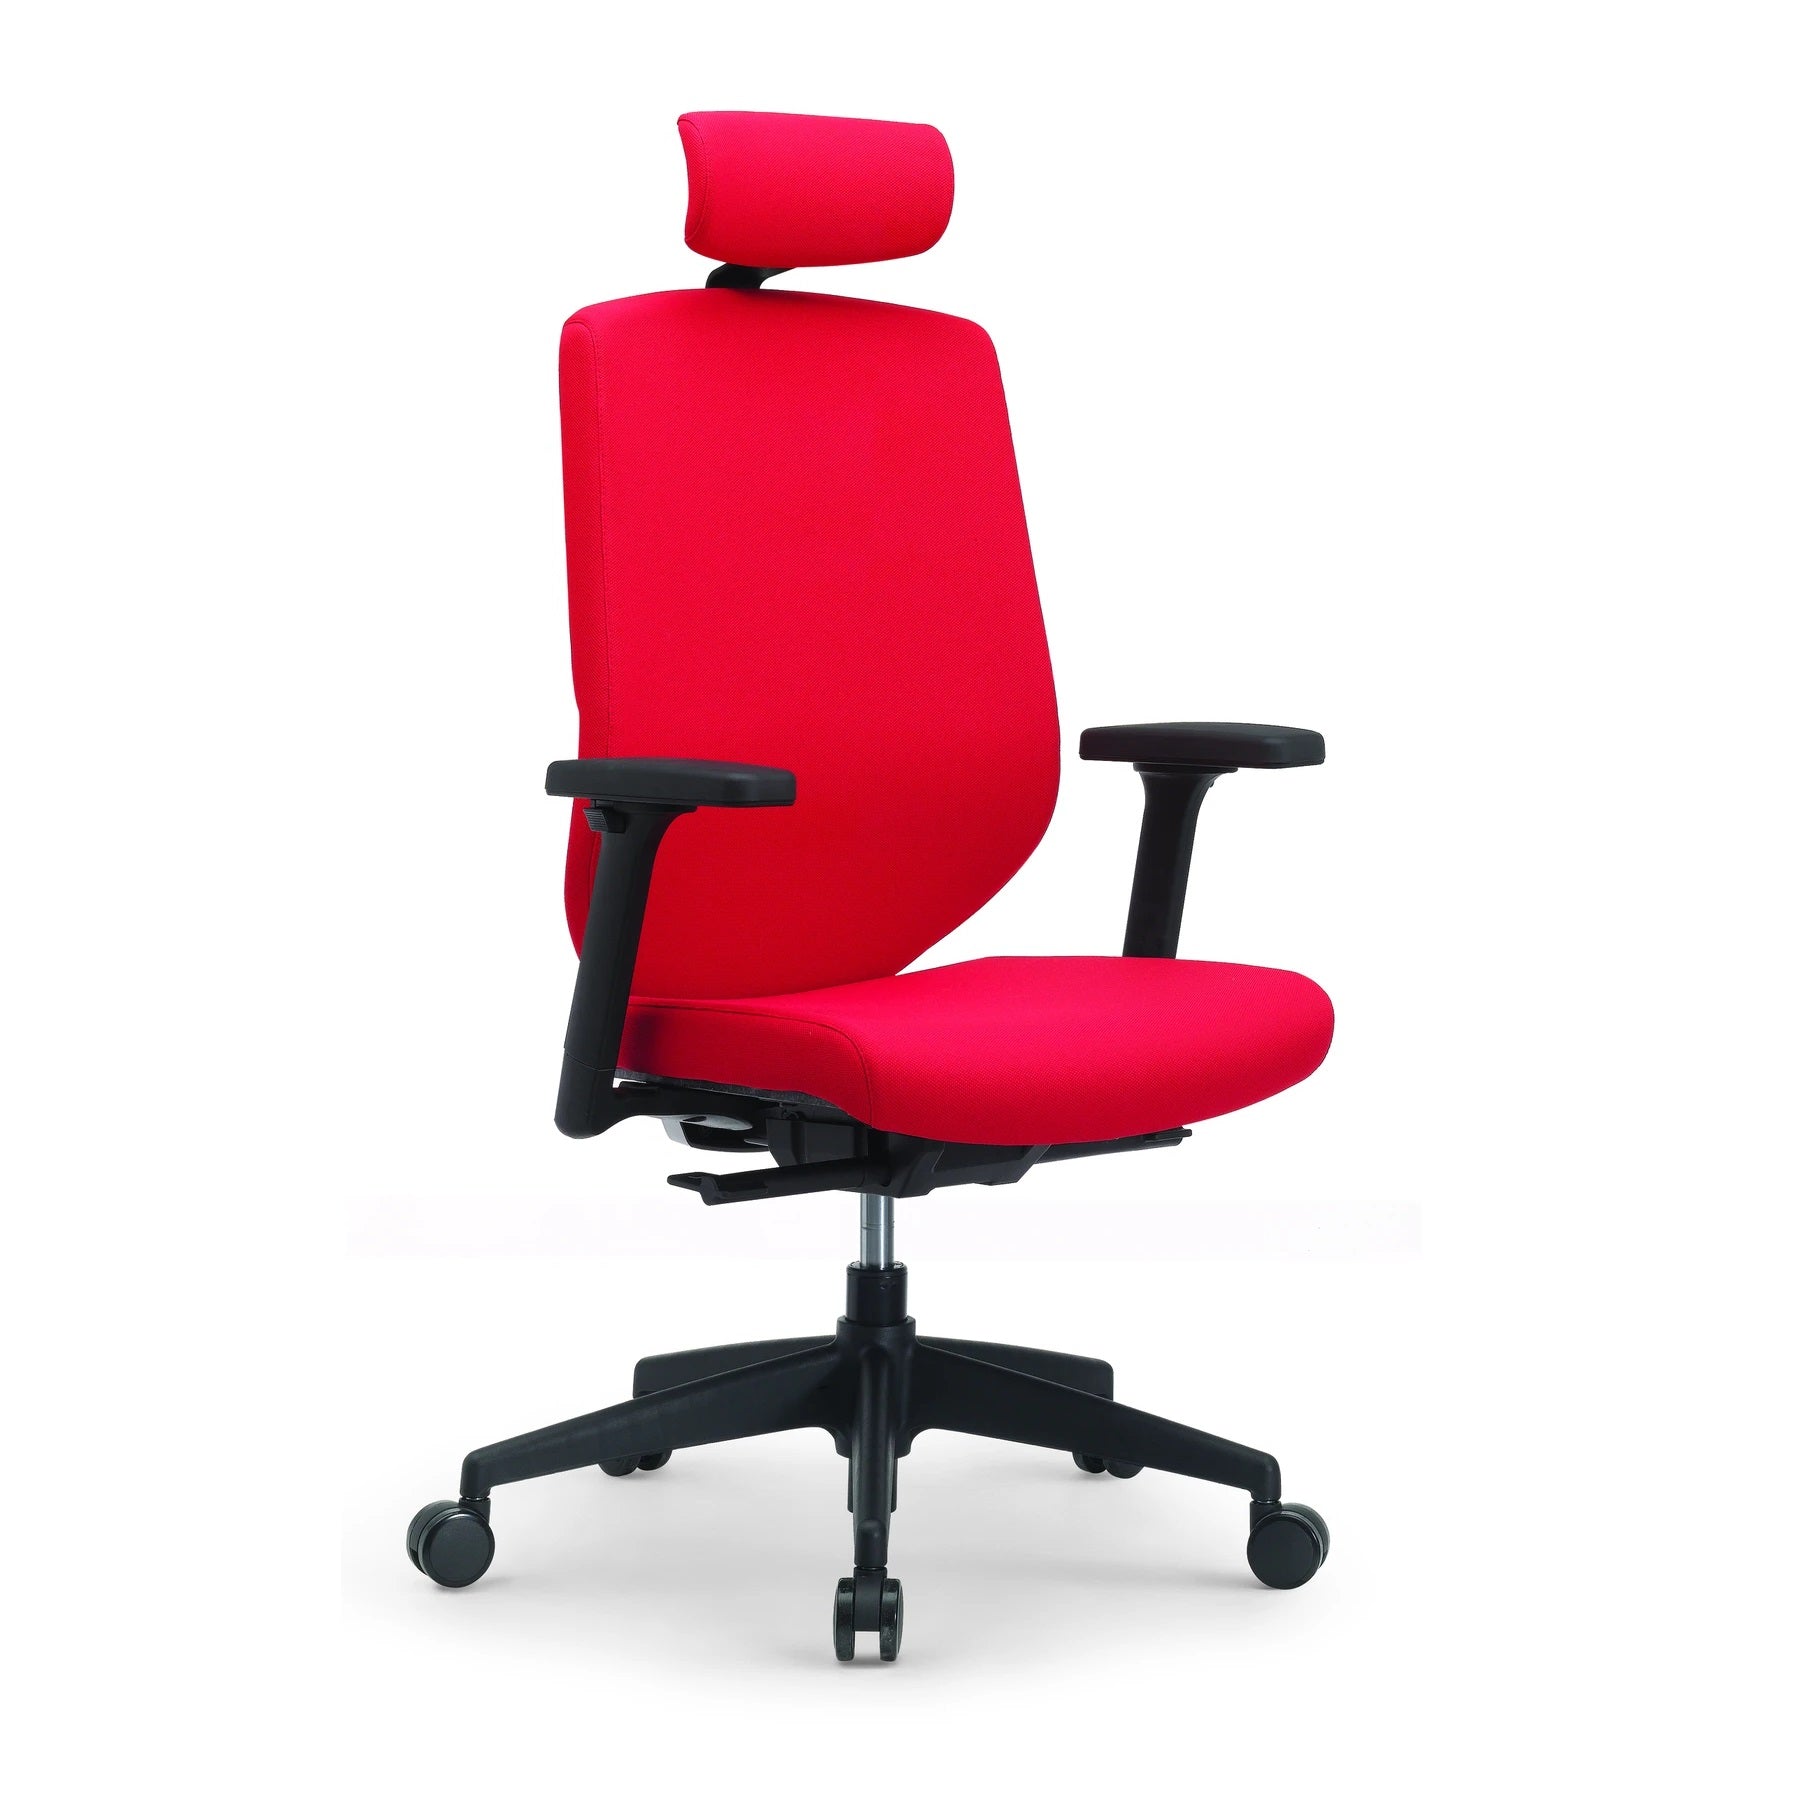 Sillón ejecutivo RE-2020 con cabecera respaldo y asiento tapizado en tela con base nylon